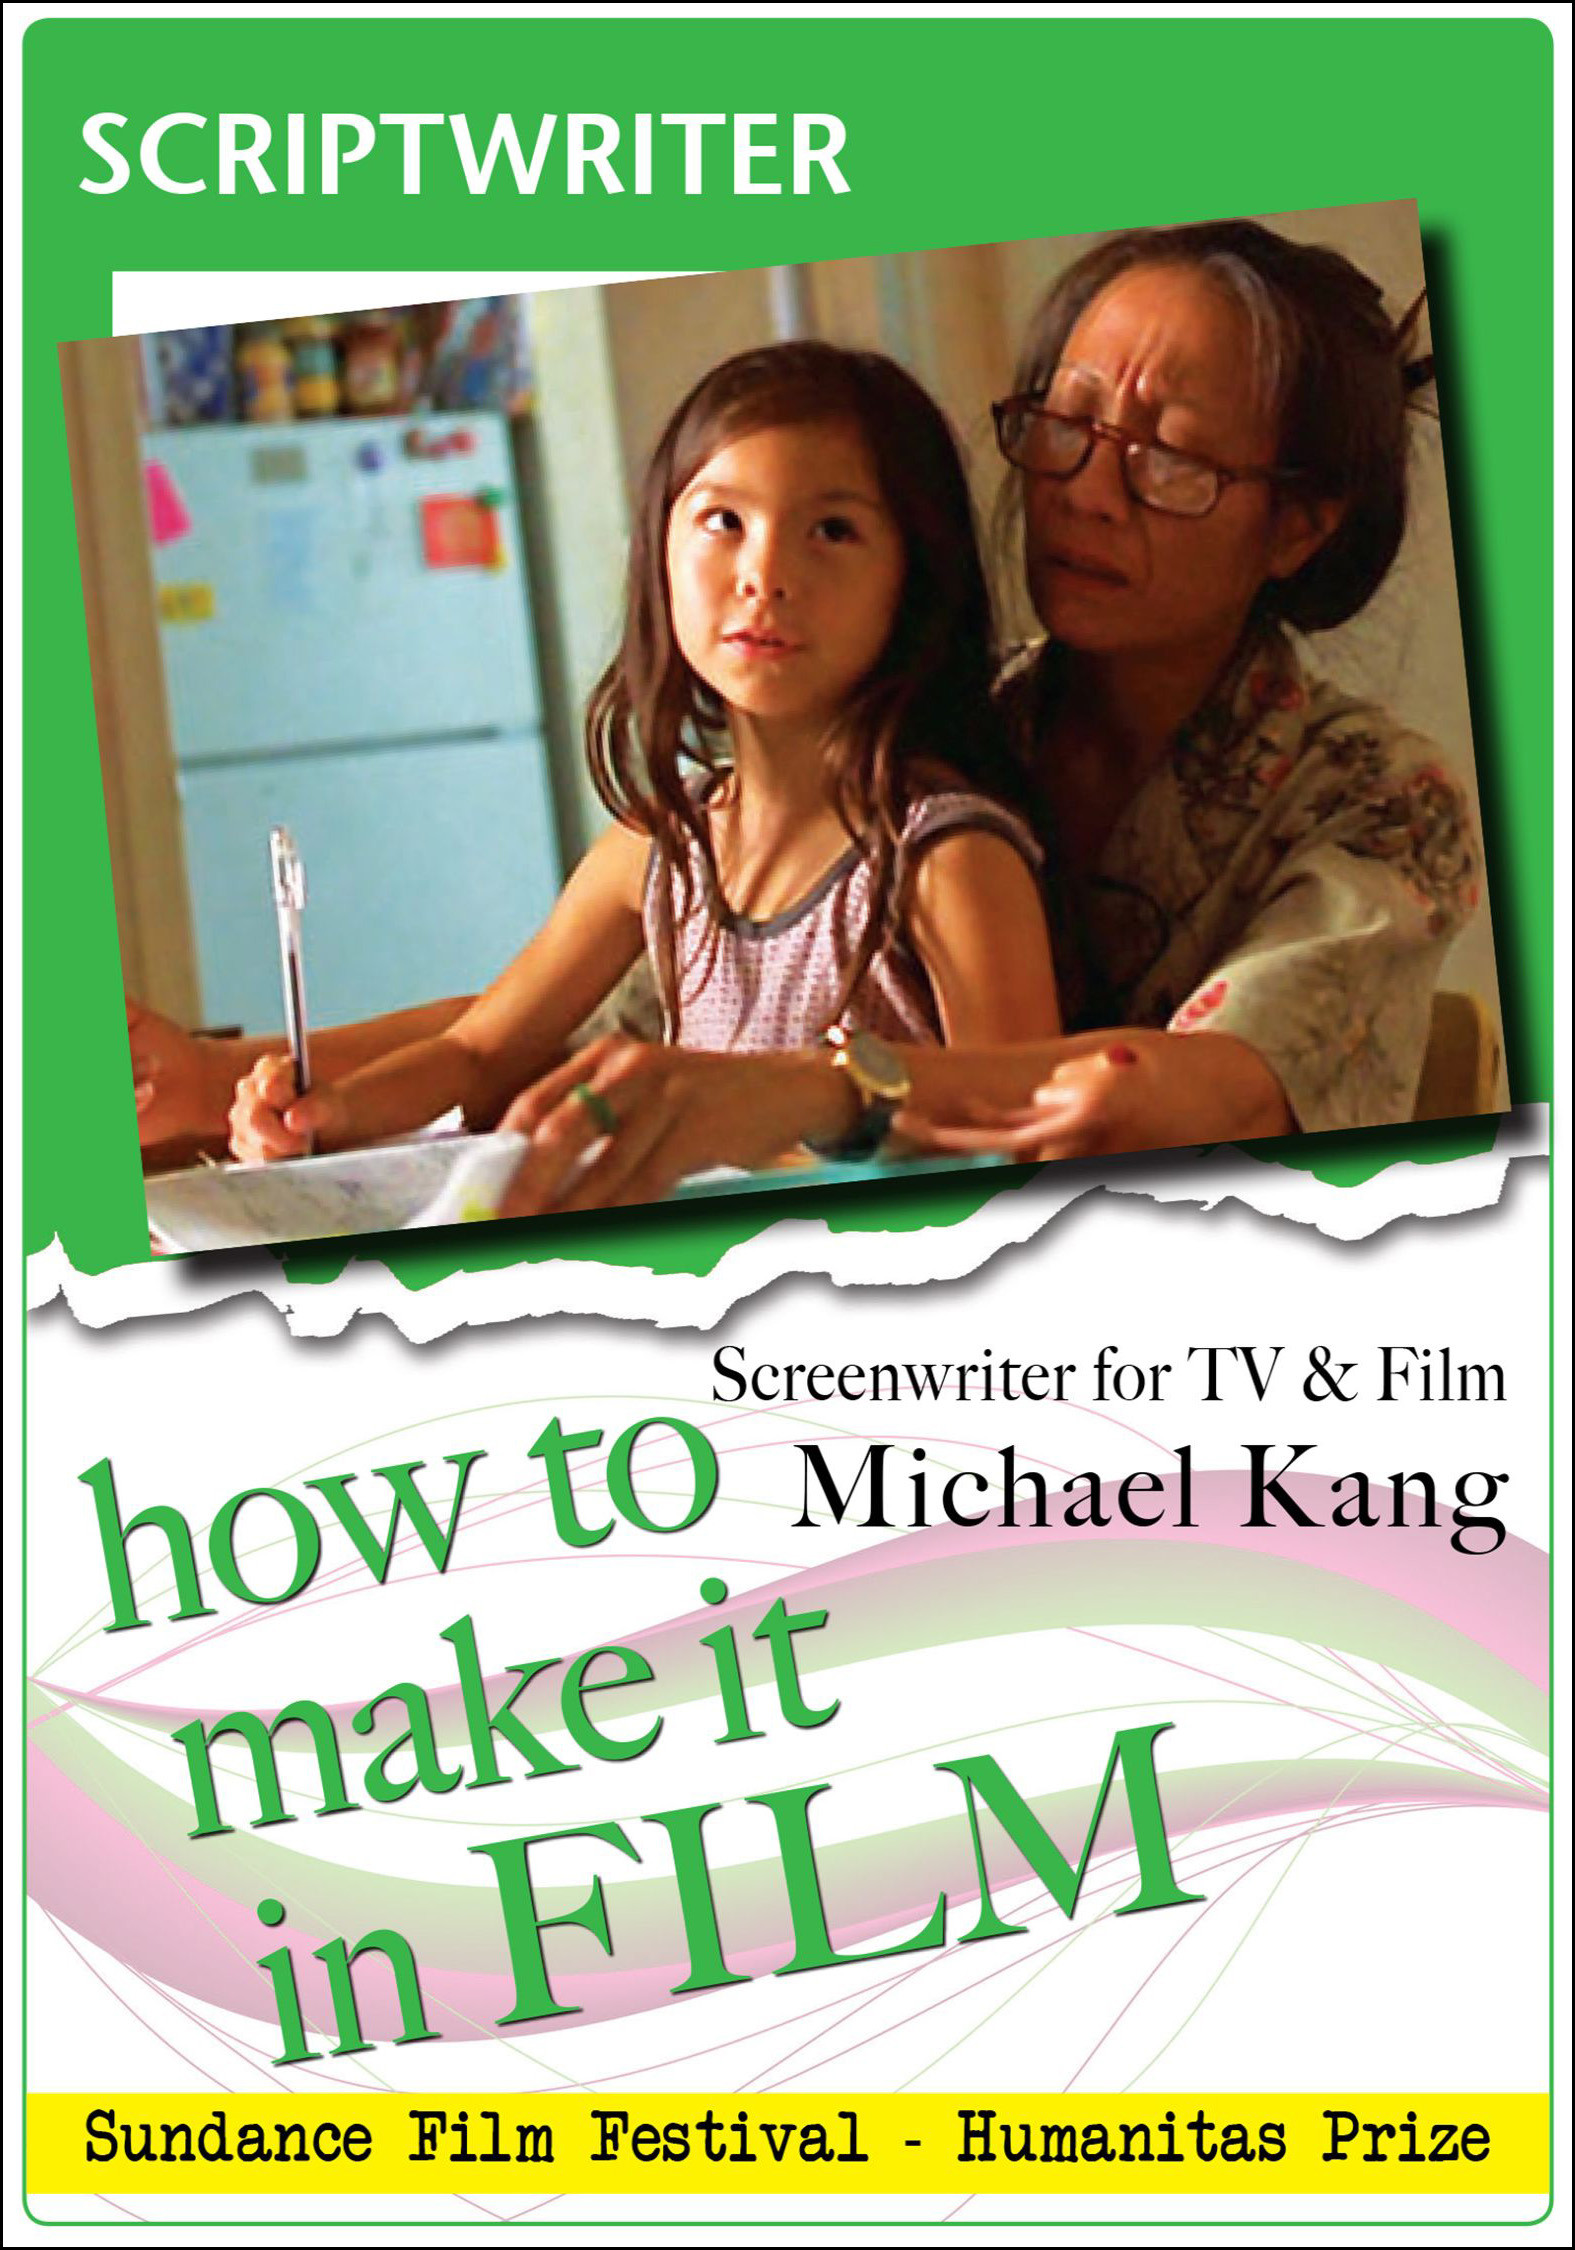 F2851 - Scriptwriter For TV & Film Michael Kang